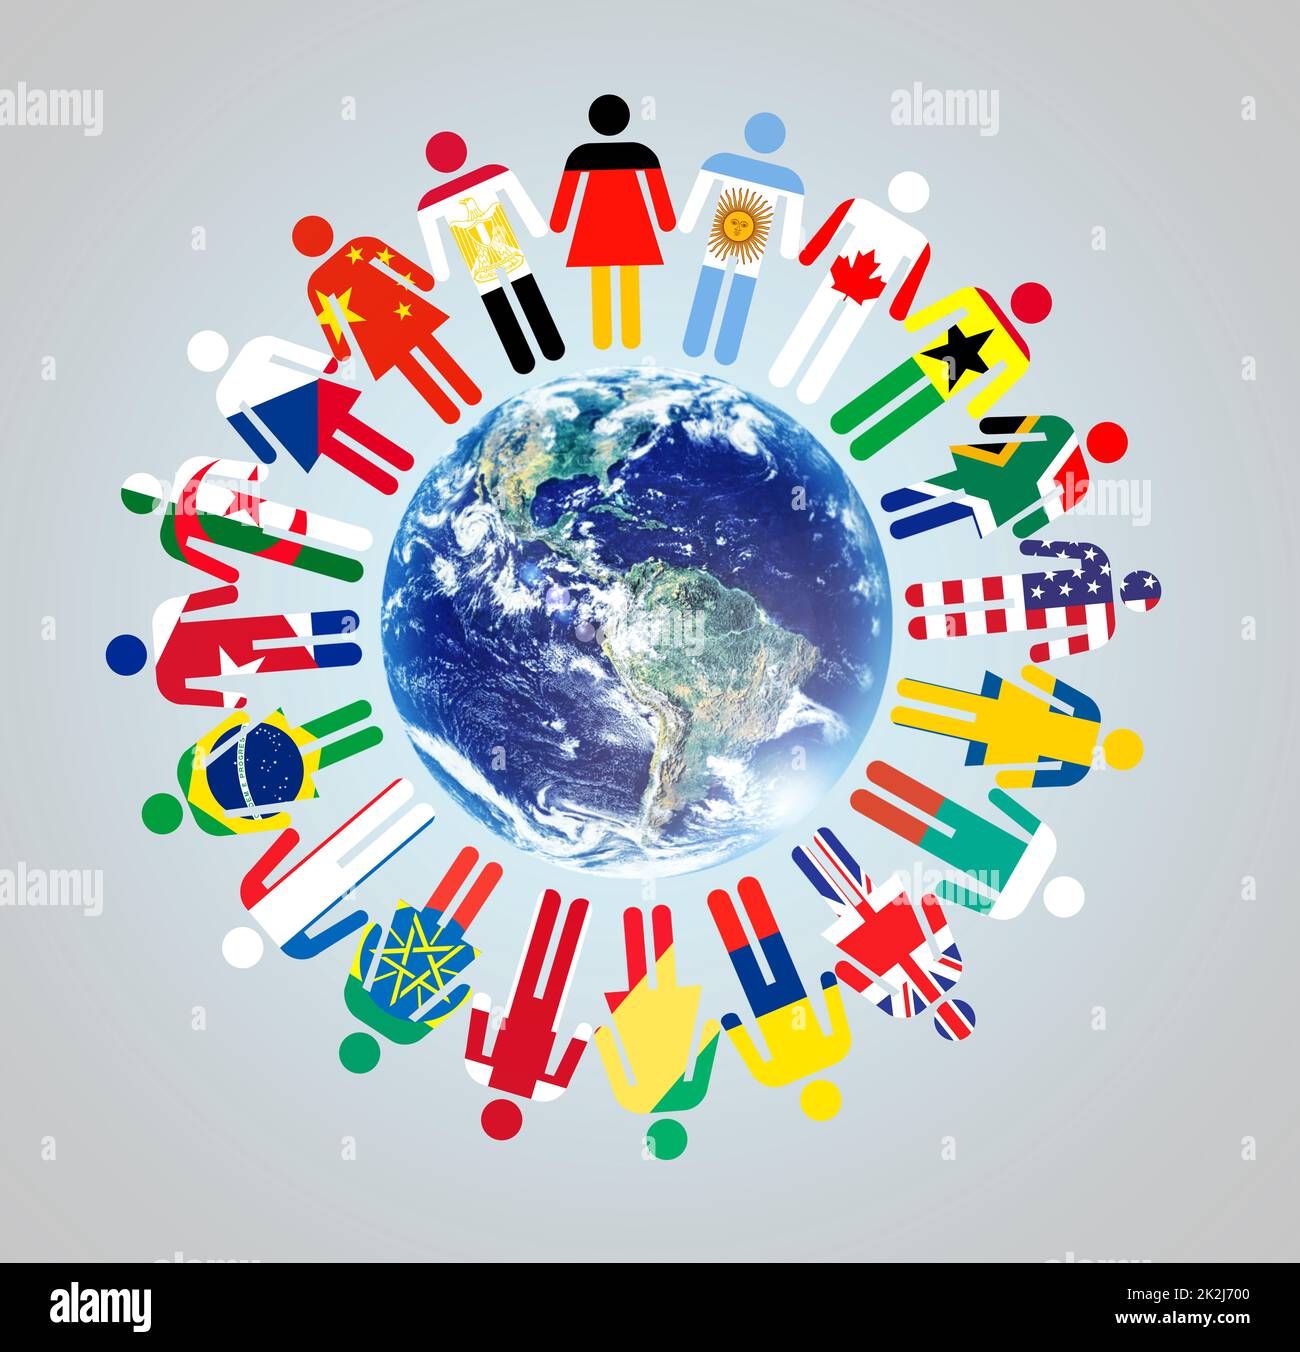 Gemeinsam machen wir einen Unterschied. Eine Welt mit Darstellungen von Weltkulturen und Nationalitäten, die um sie herum stehen. Stockfoto